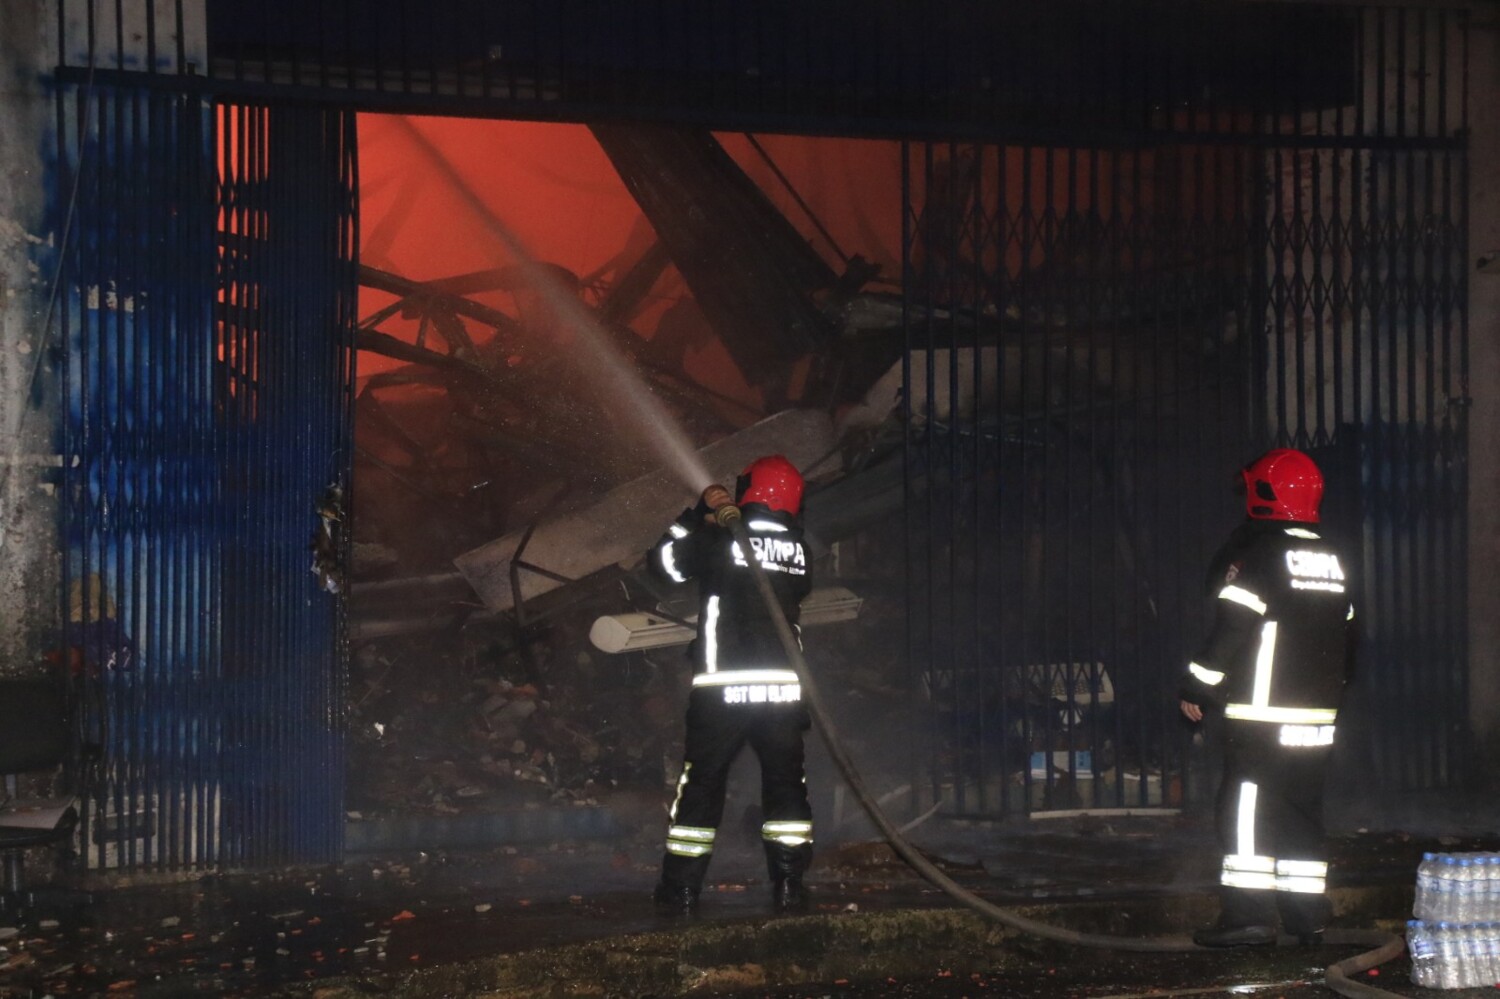 
        
        
            Veja imagens do incêndio em loja do comércio em Belém
        
    